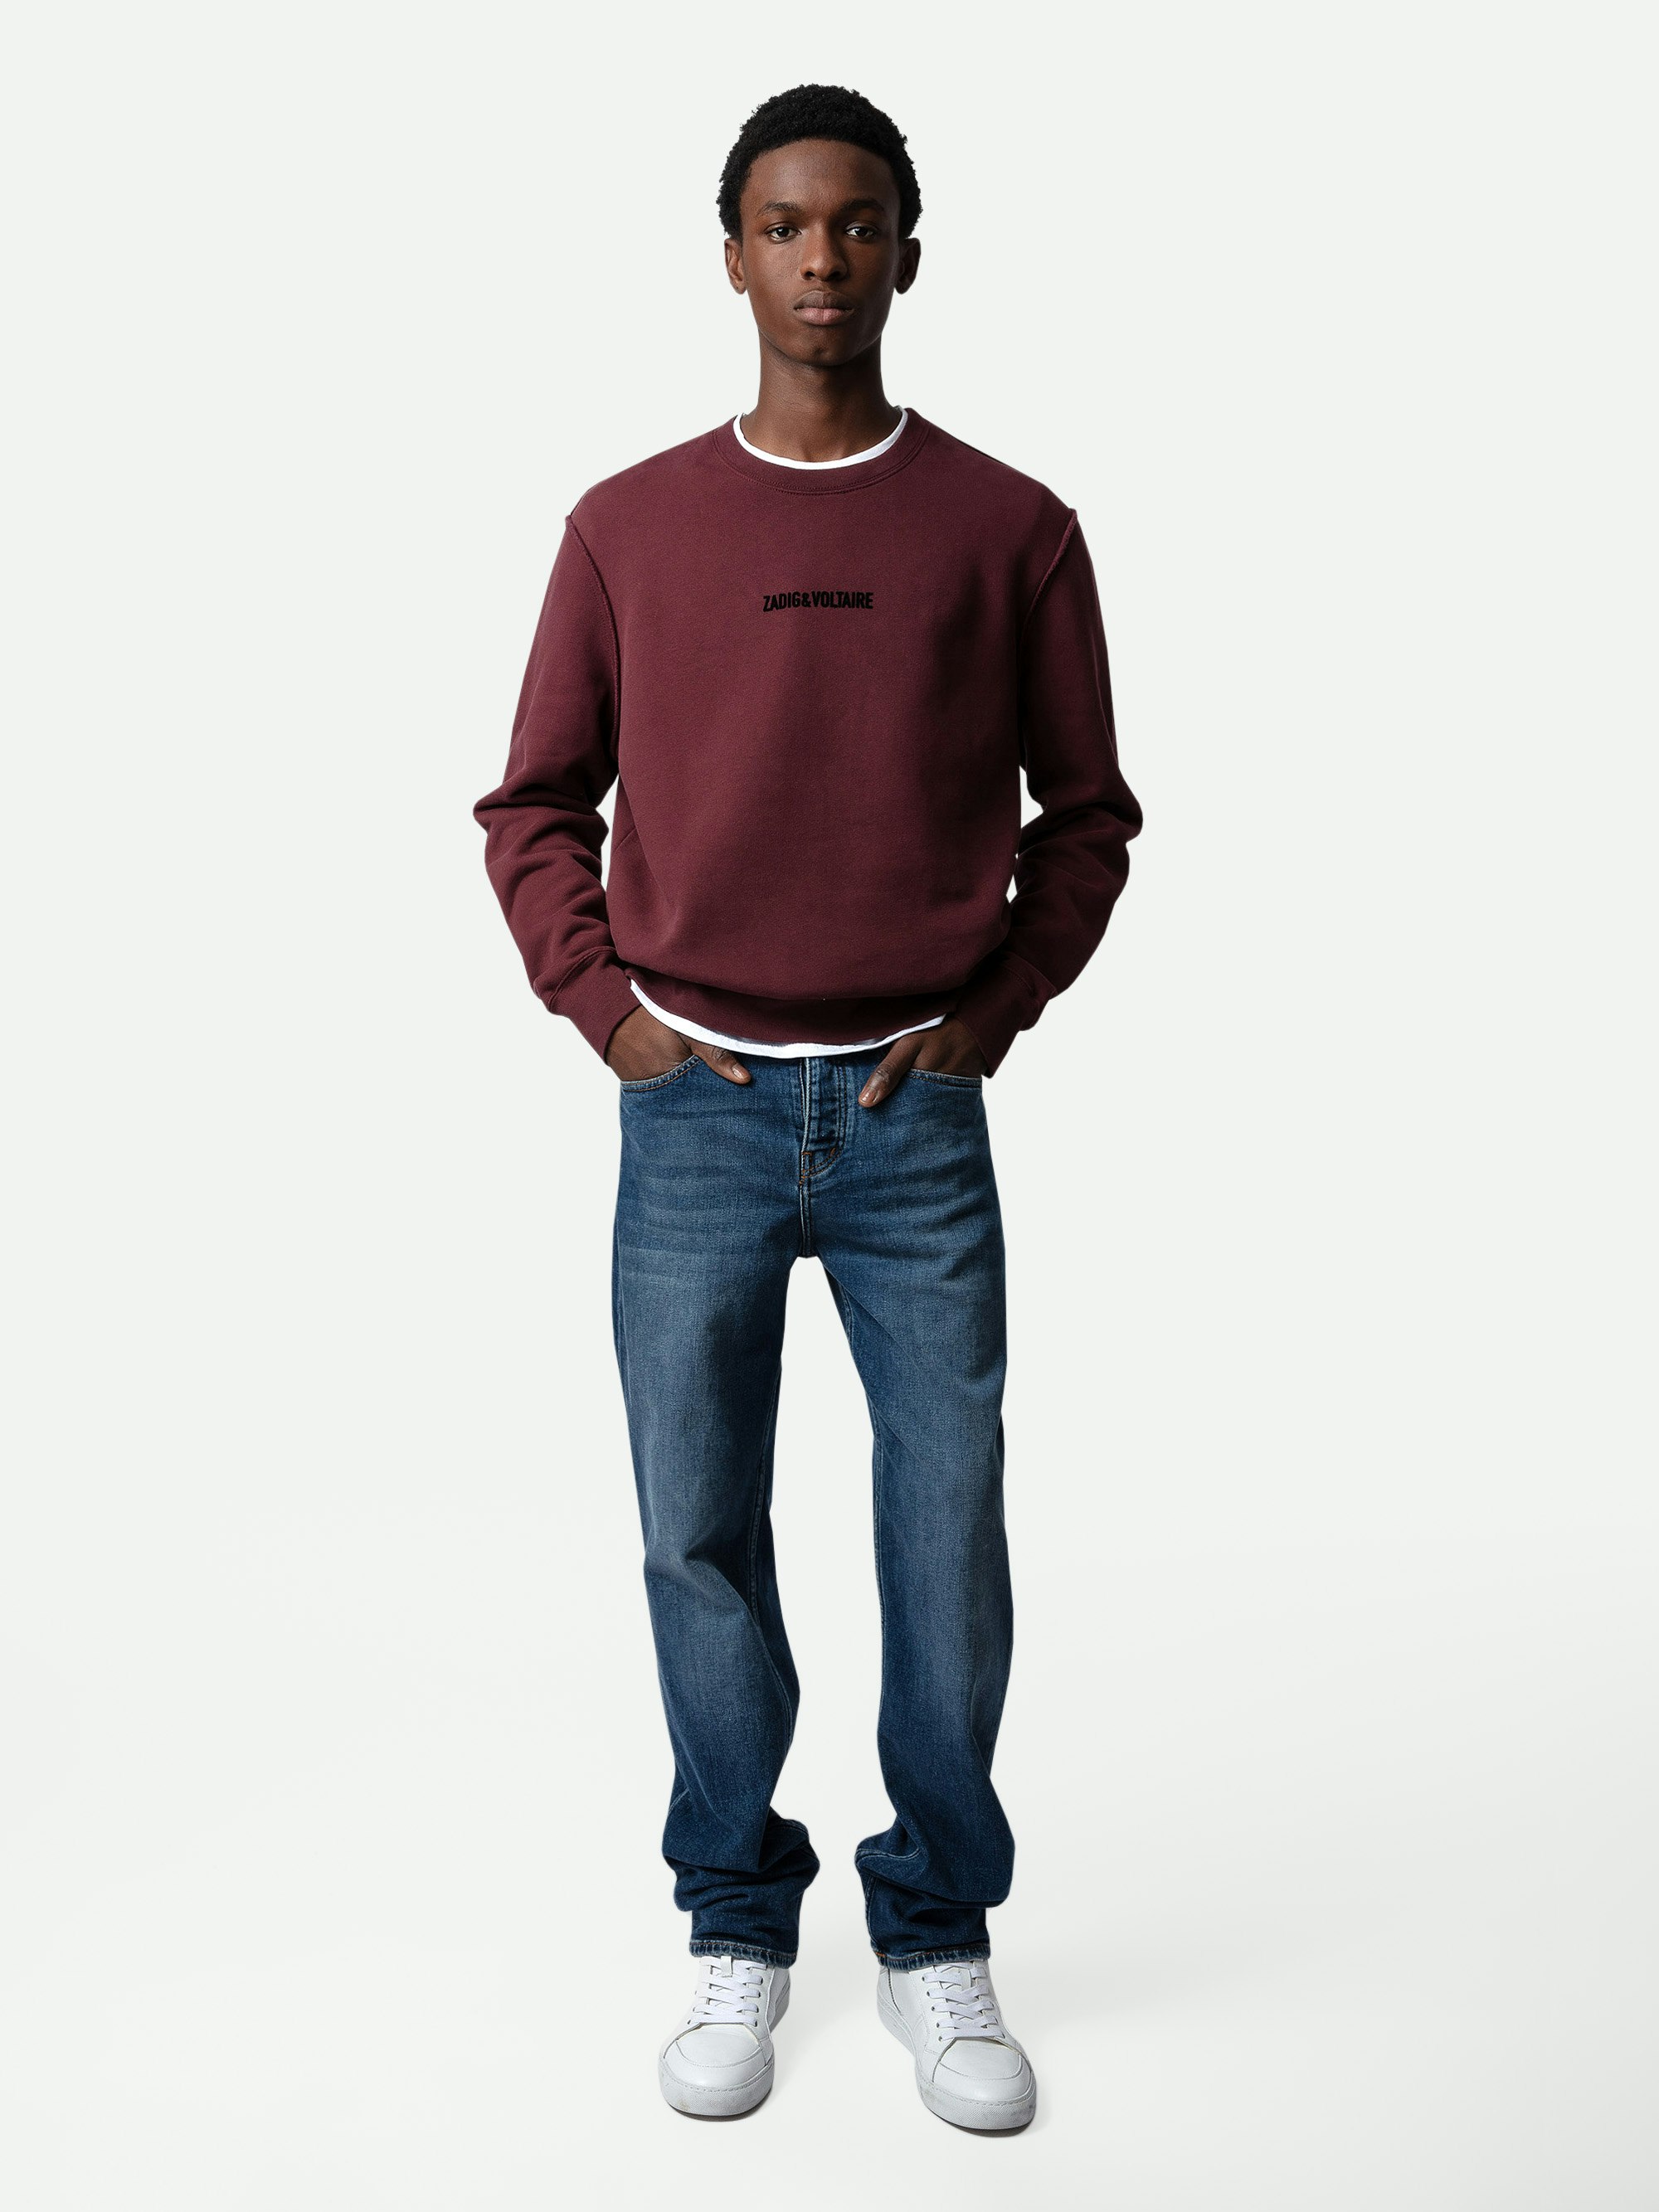 Sweatshirt Simba - Sweatshirt bordeaux à manches longues, imprimés signature et Dobermann.